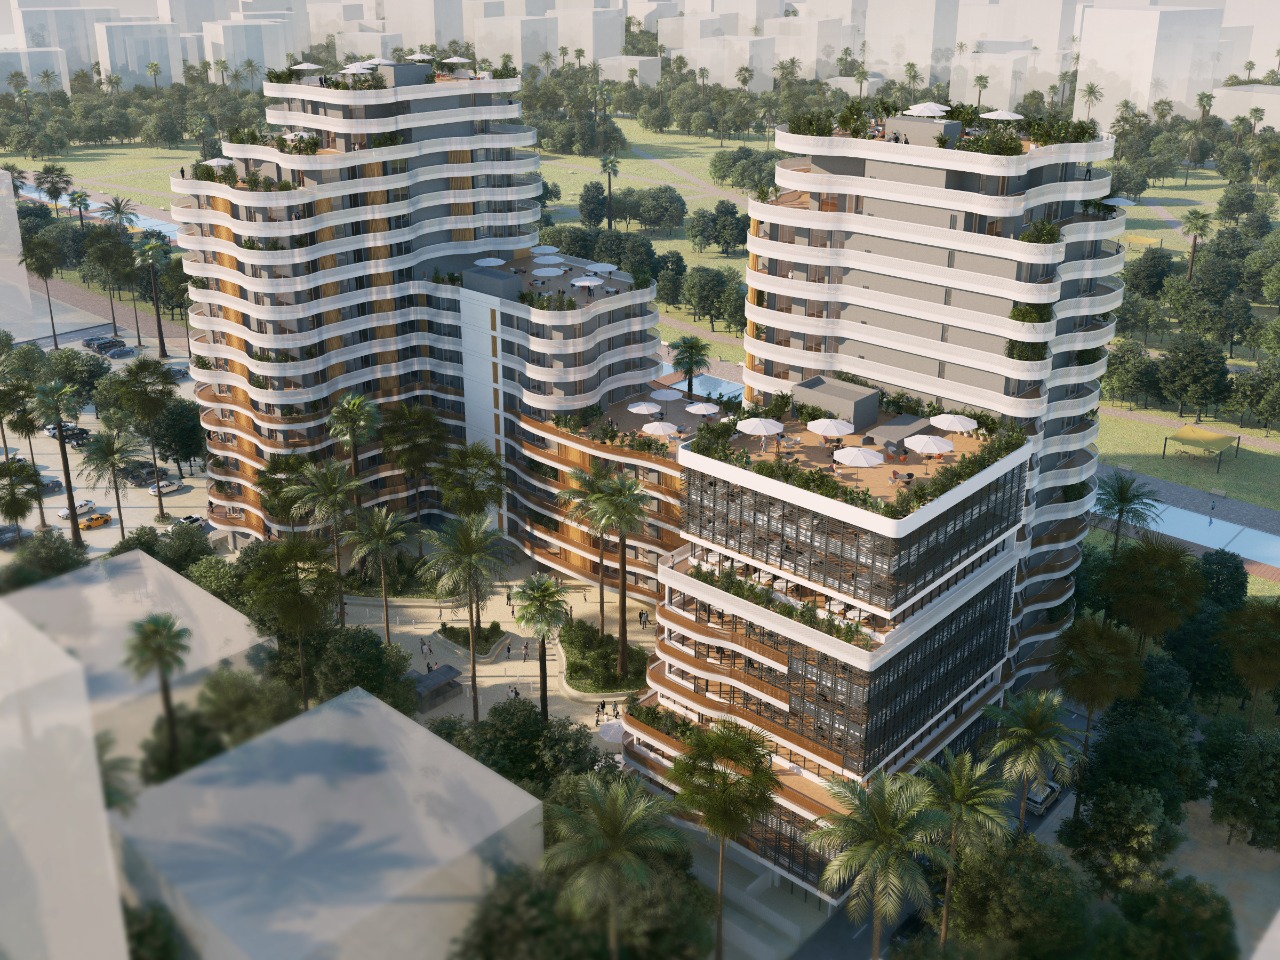 « Les jardins d’Anfa » : Valoris property présente son nouveau projet immobilier à Casablanca